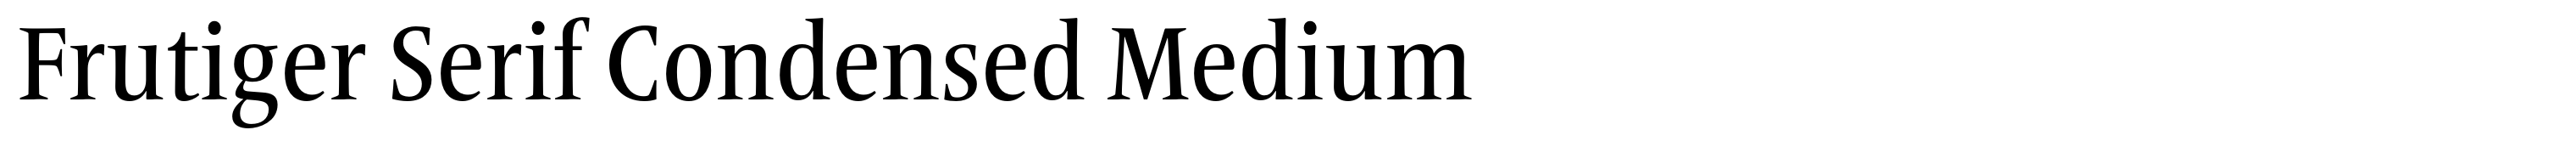 Frutiger Serif Condensed Medium